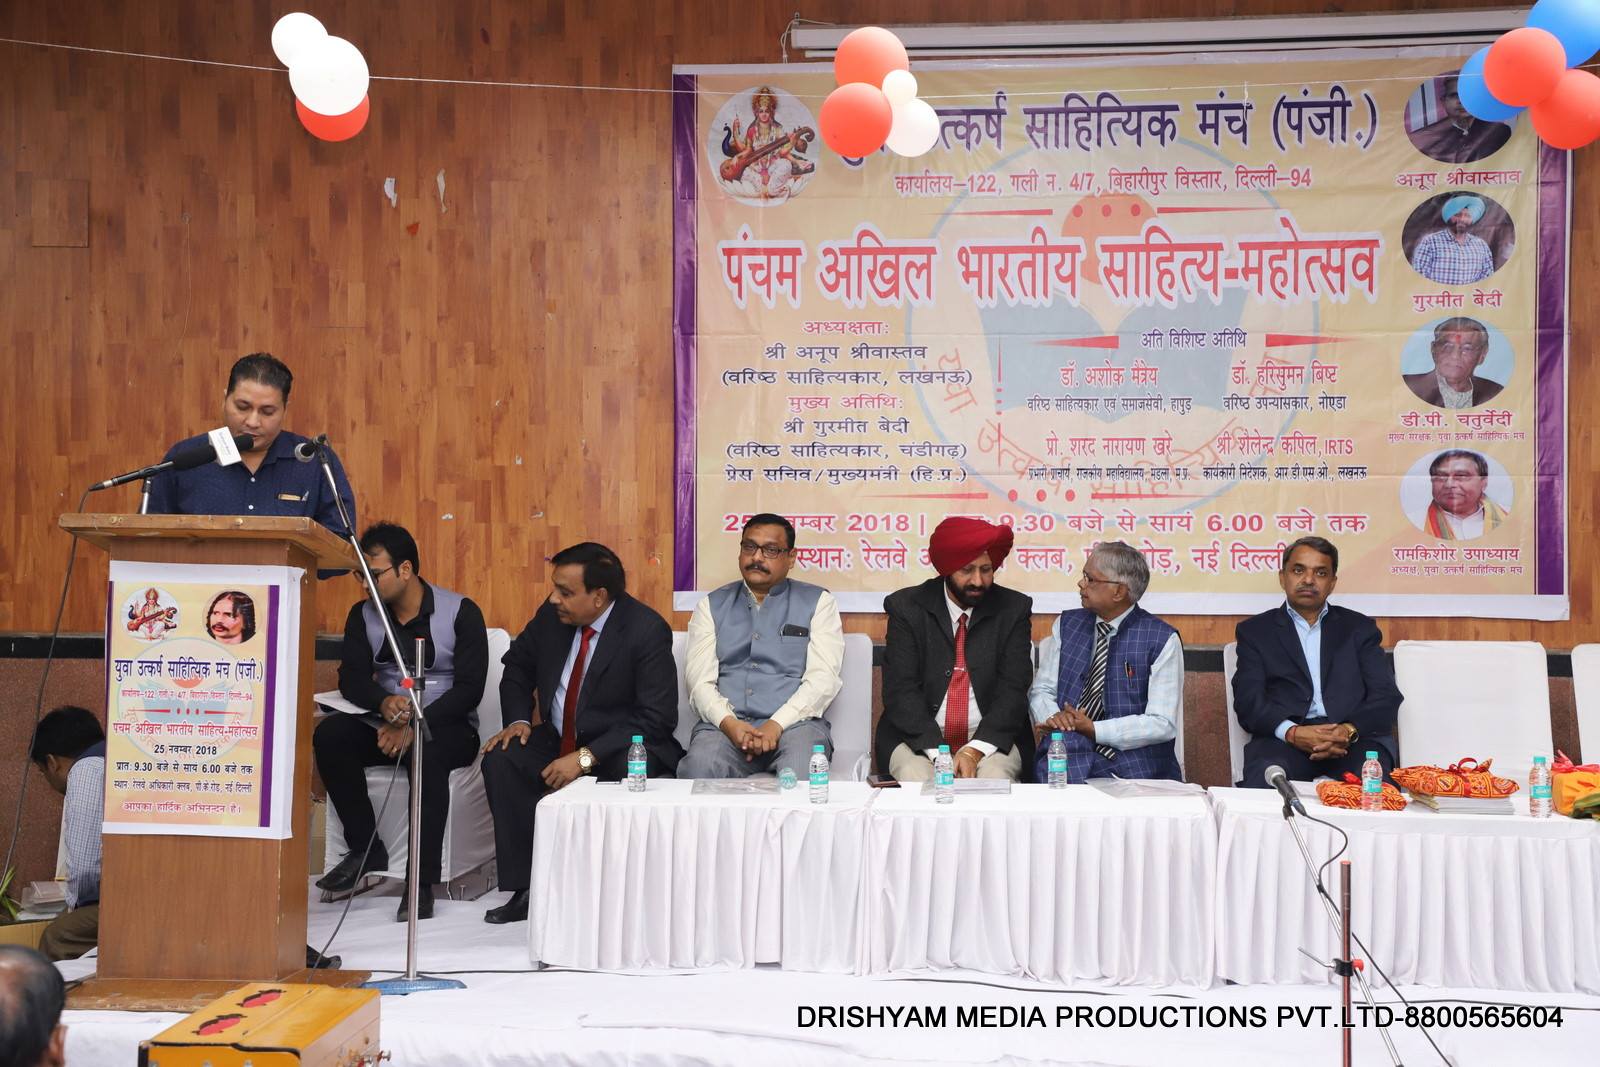 युवा उत्कर्ष साहित्यिक मंच के वार्षिक उत्सव में  वार्षिक खबरें पढ़ते संजय कुमार गिरि